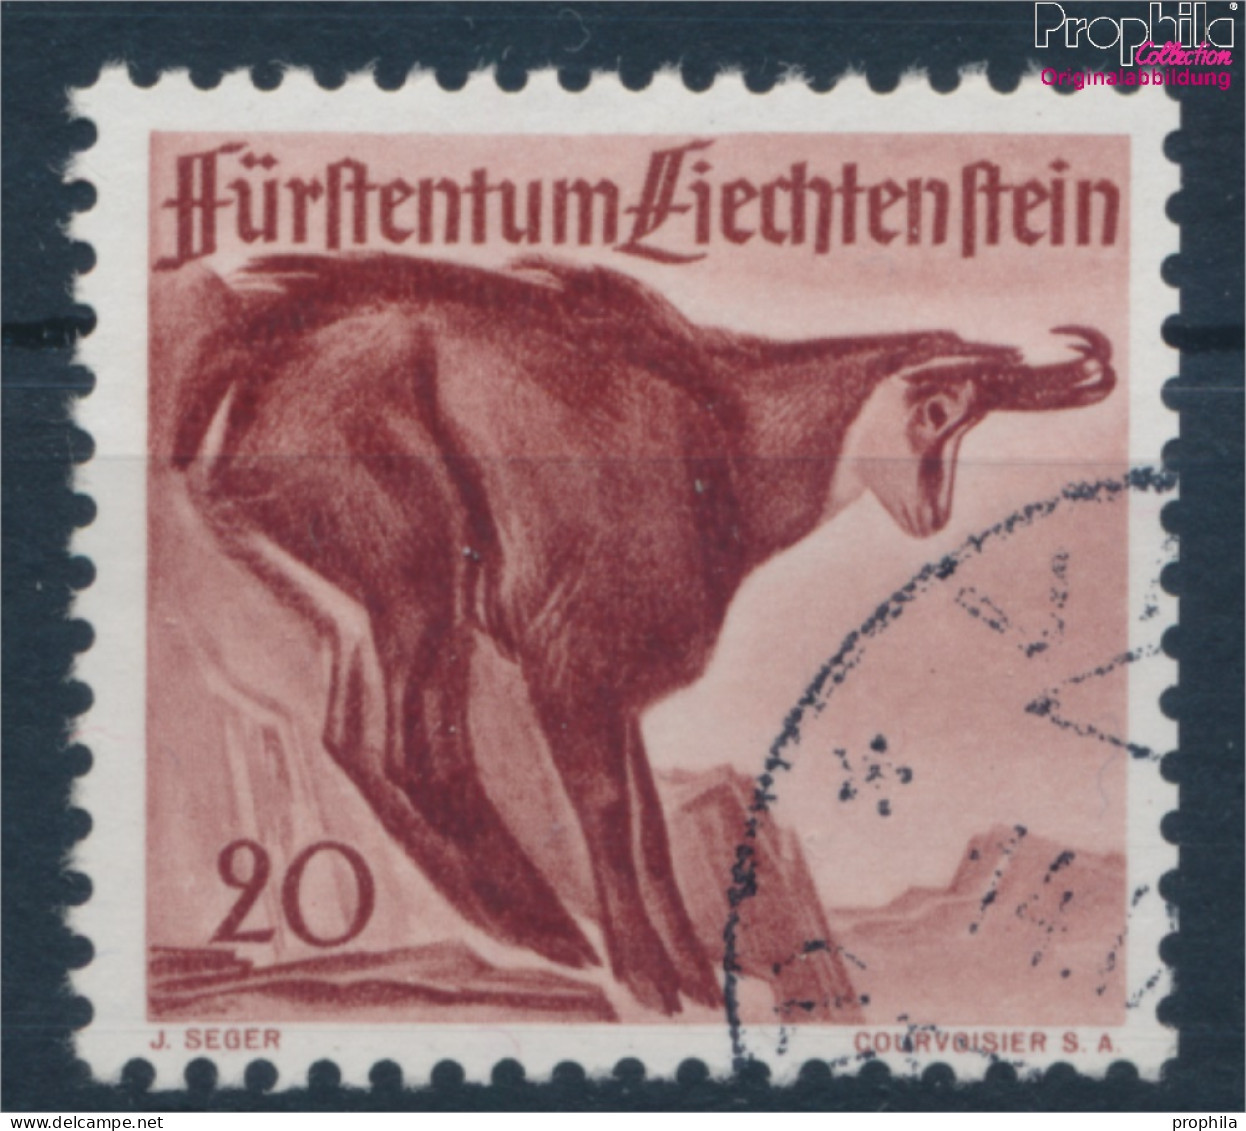 Liechtenstein 253 Gestempelt 1947 Jagd (10374115 - Oblitérés